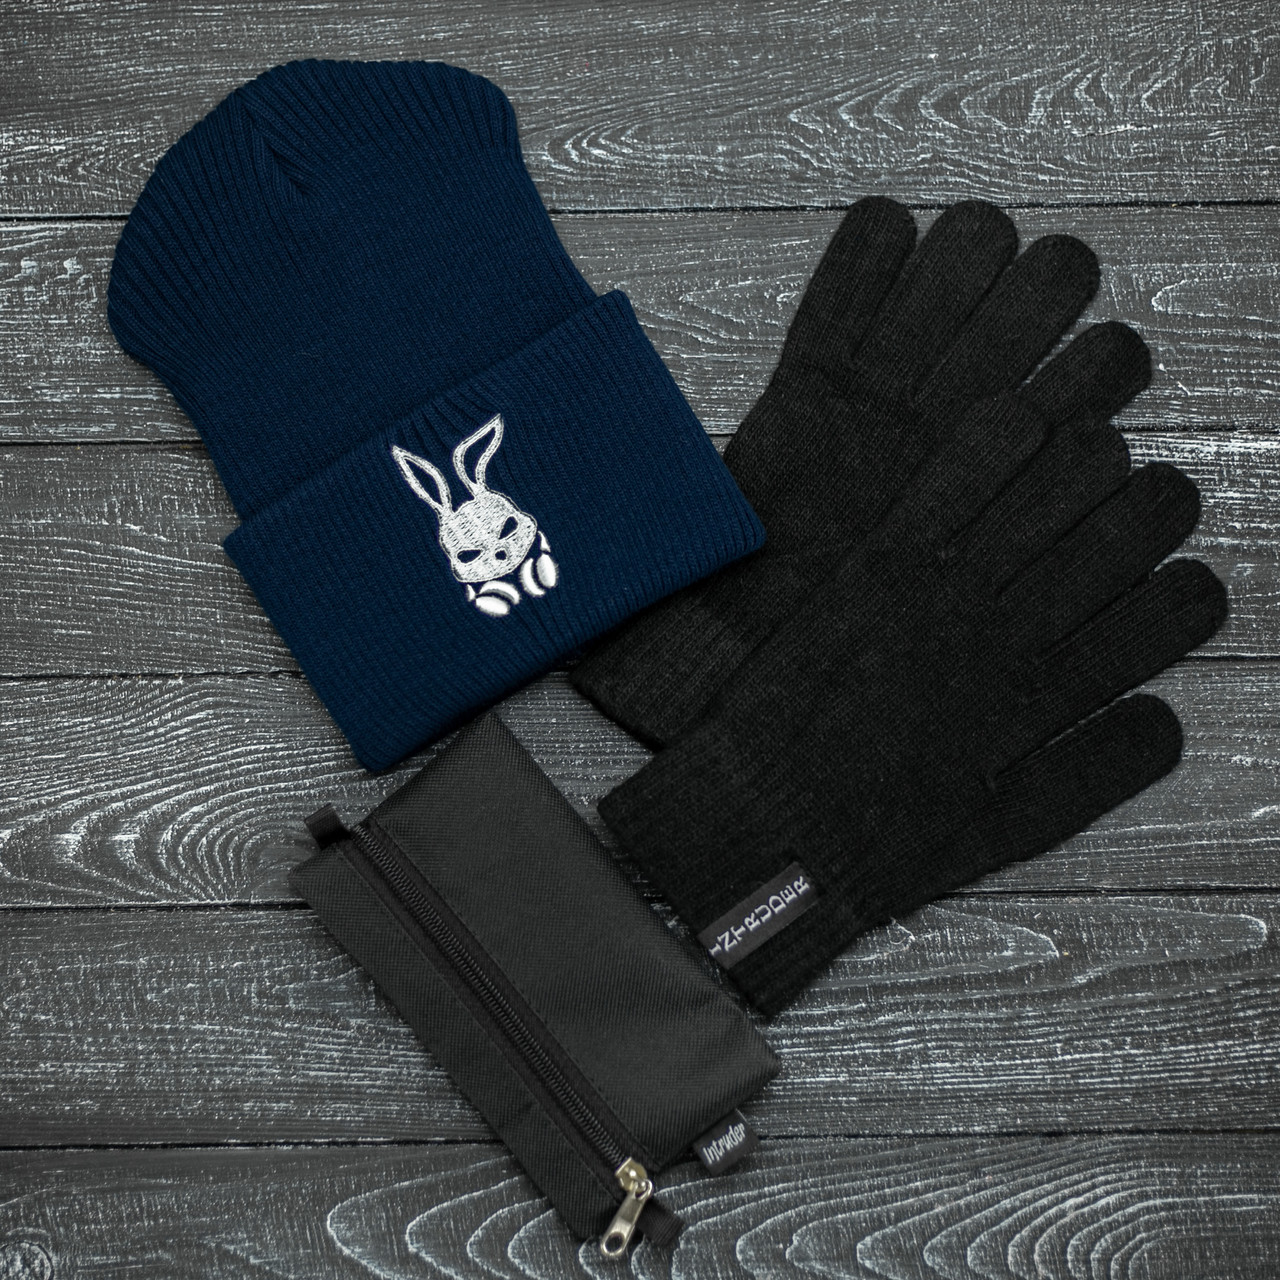 Шапка Intruder зимняя bunny logo синяя и перчатки черные, зимний комплект